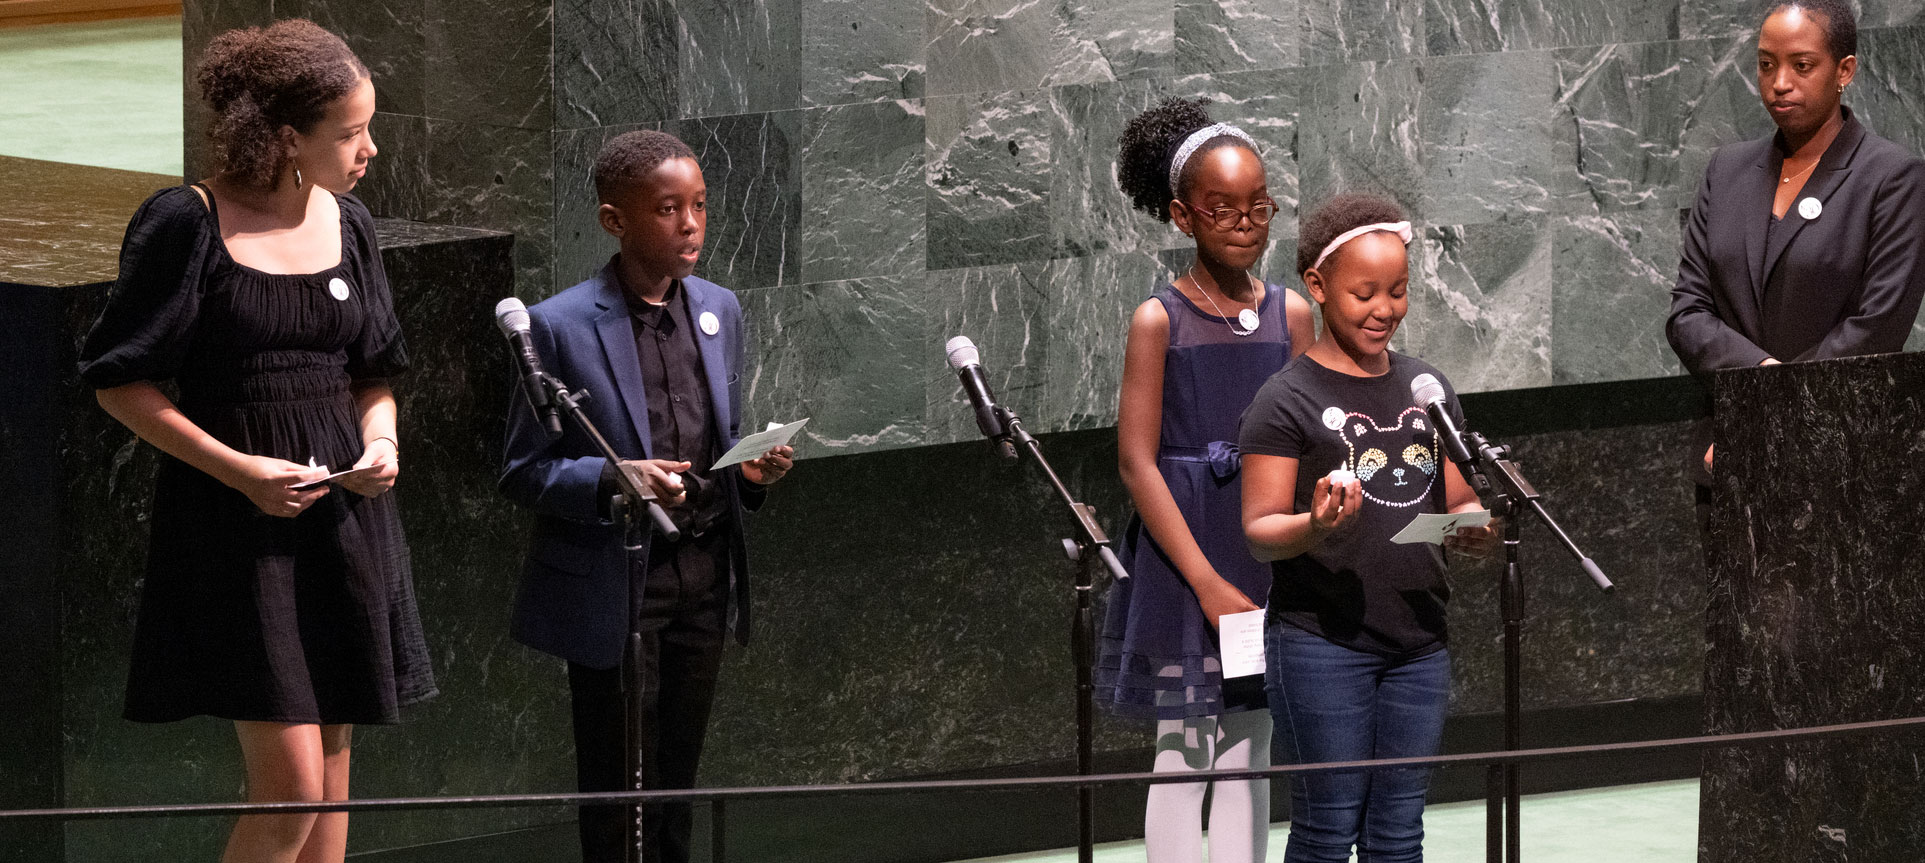 Руандийская молодежь выступает во время заседания Генеральной Ассамблеи ООН с посланиями надежды для Руанды. Фото ООН/Эскиндер Дебебе